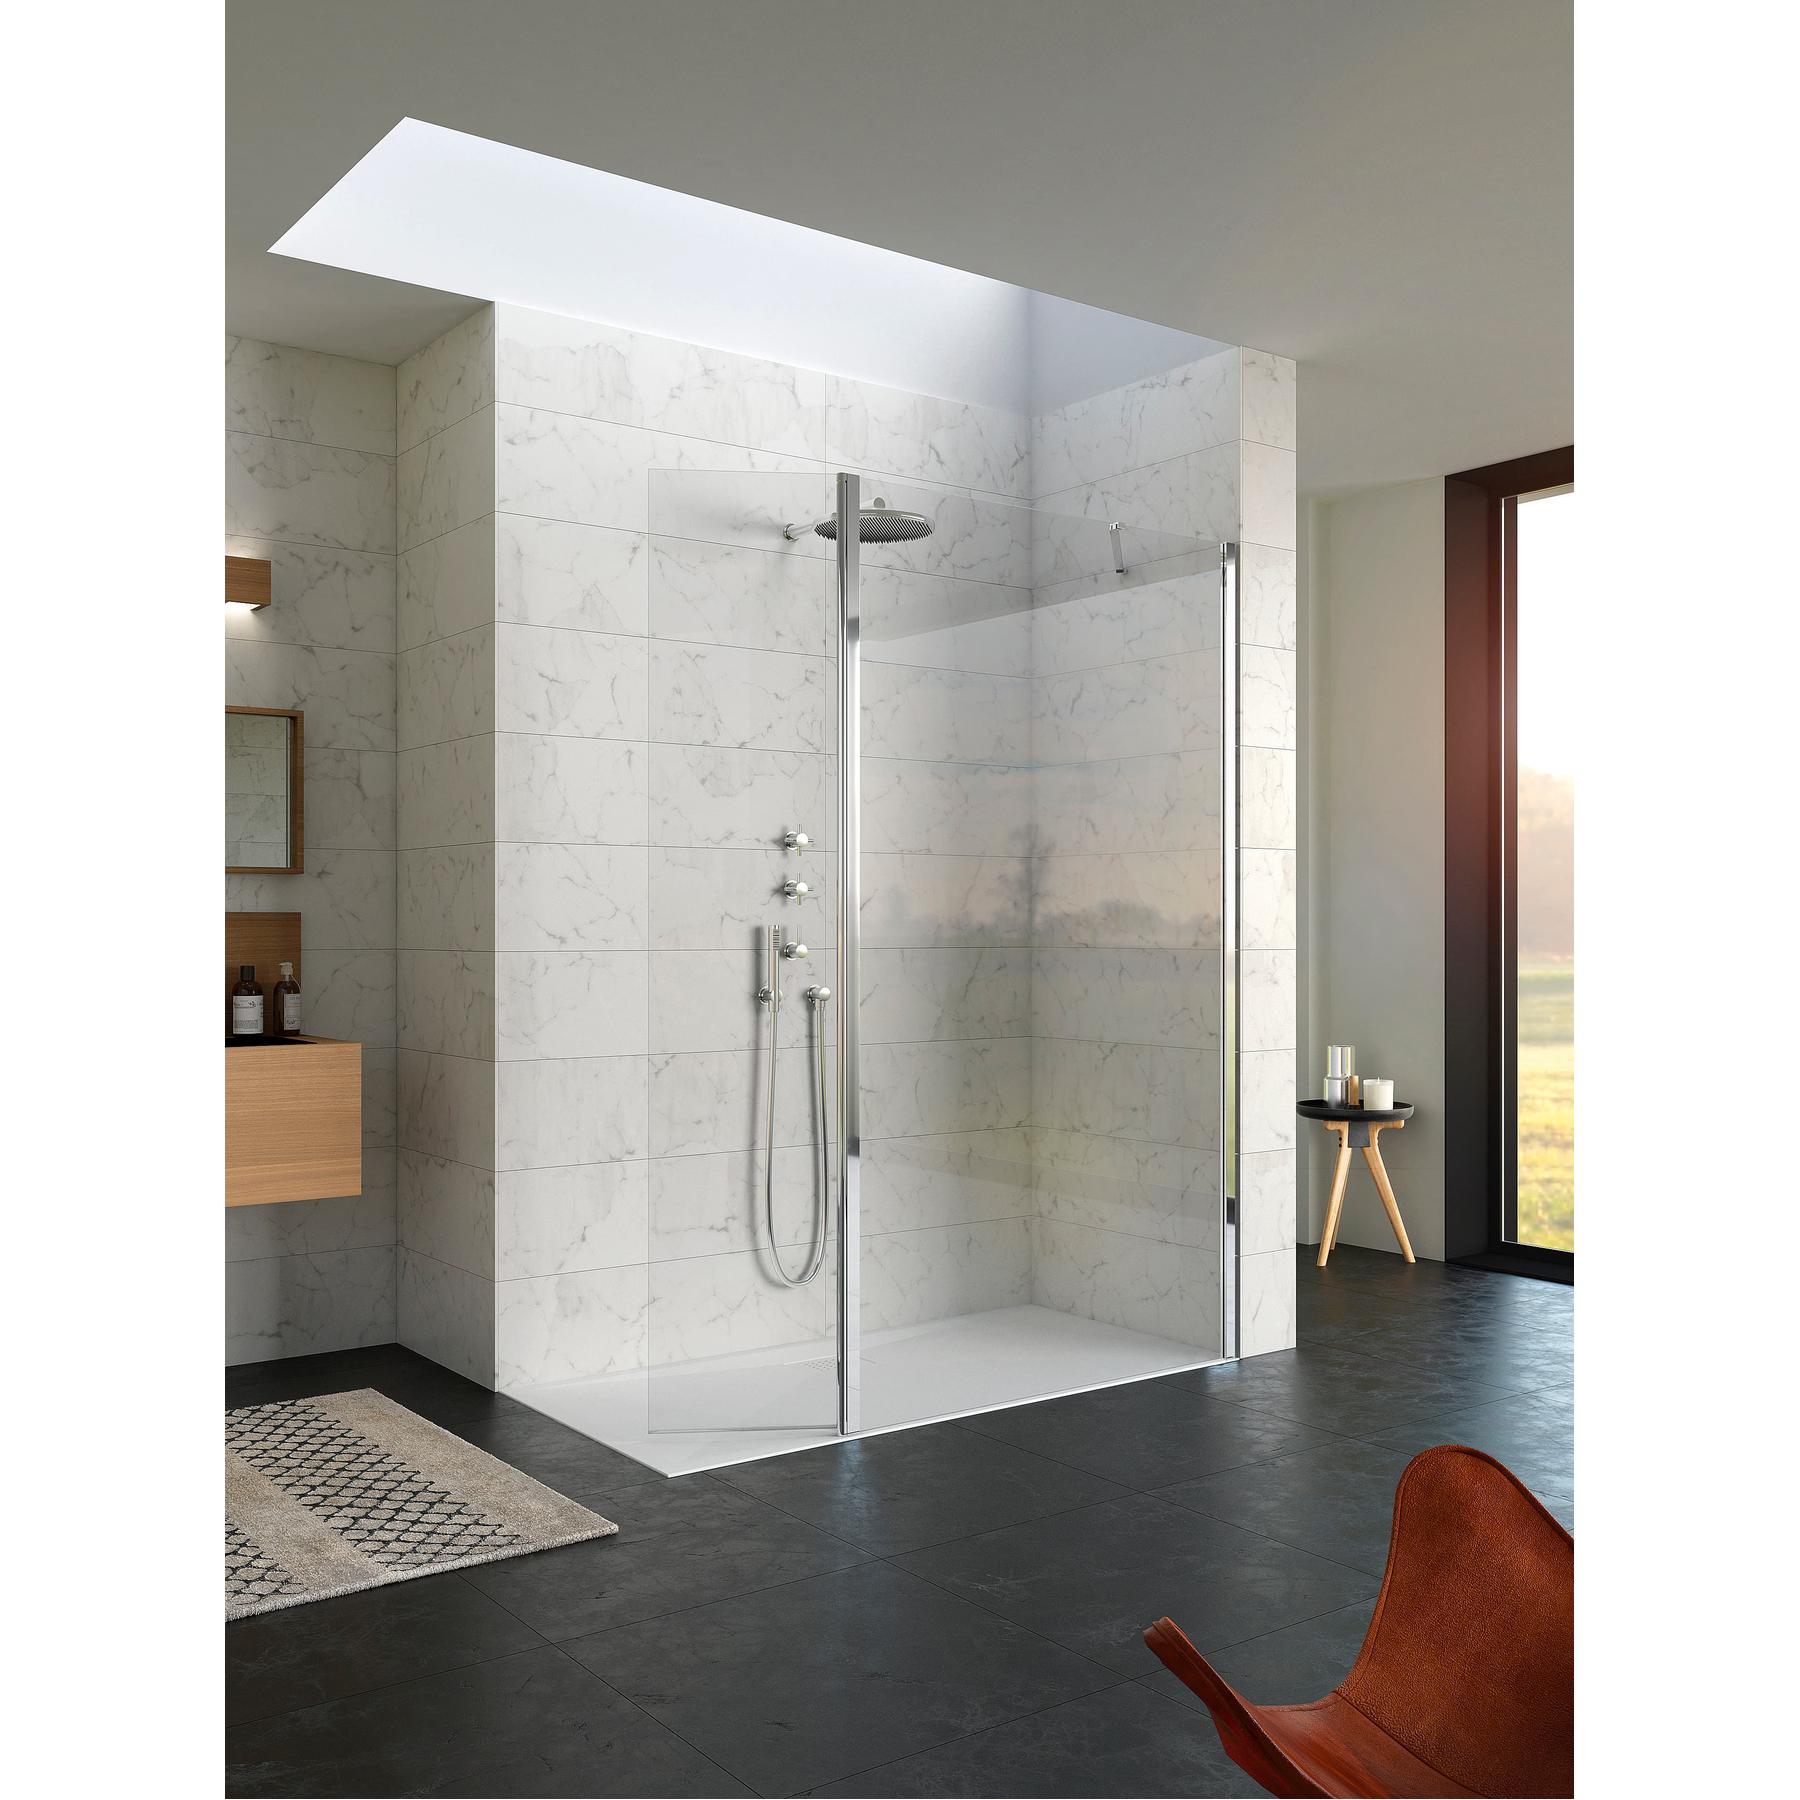 Paroi de douche fixe hauteur 2m largeur 1.60m avec porte pivotante à 180 KINEQUARTZ Duo fixation à droite charnière murale chromées verre transparent 